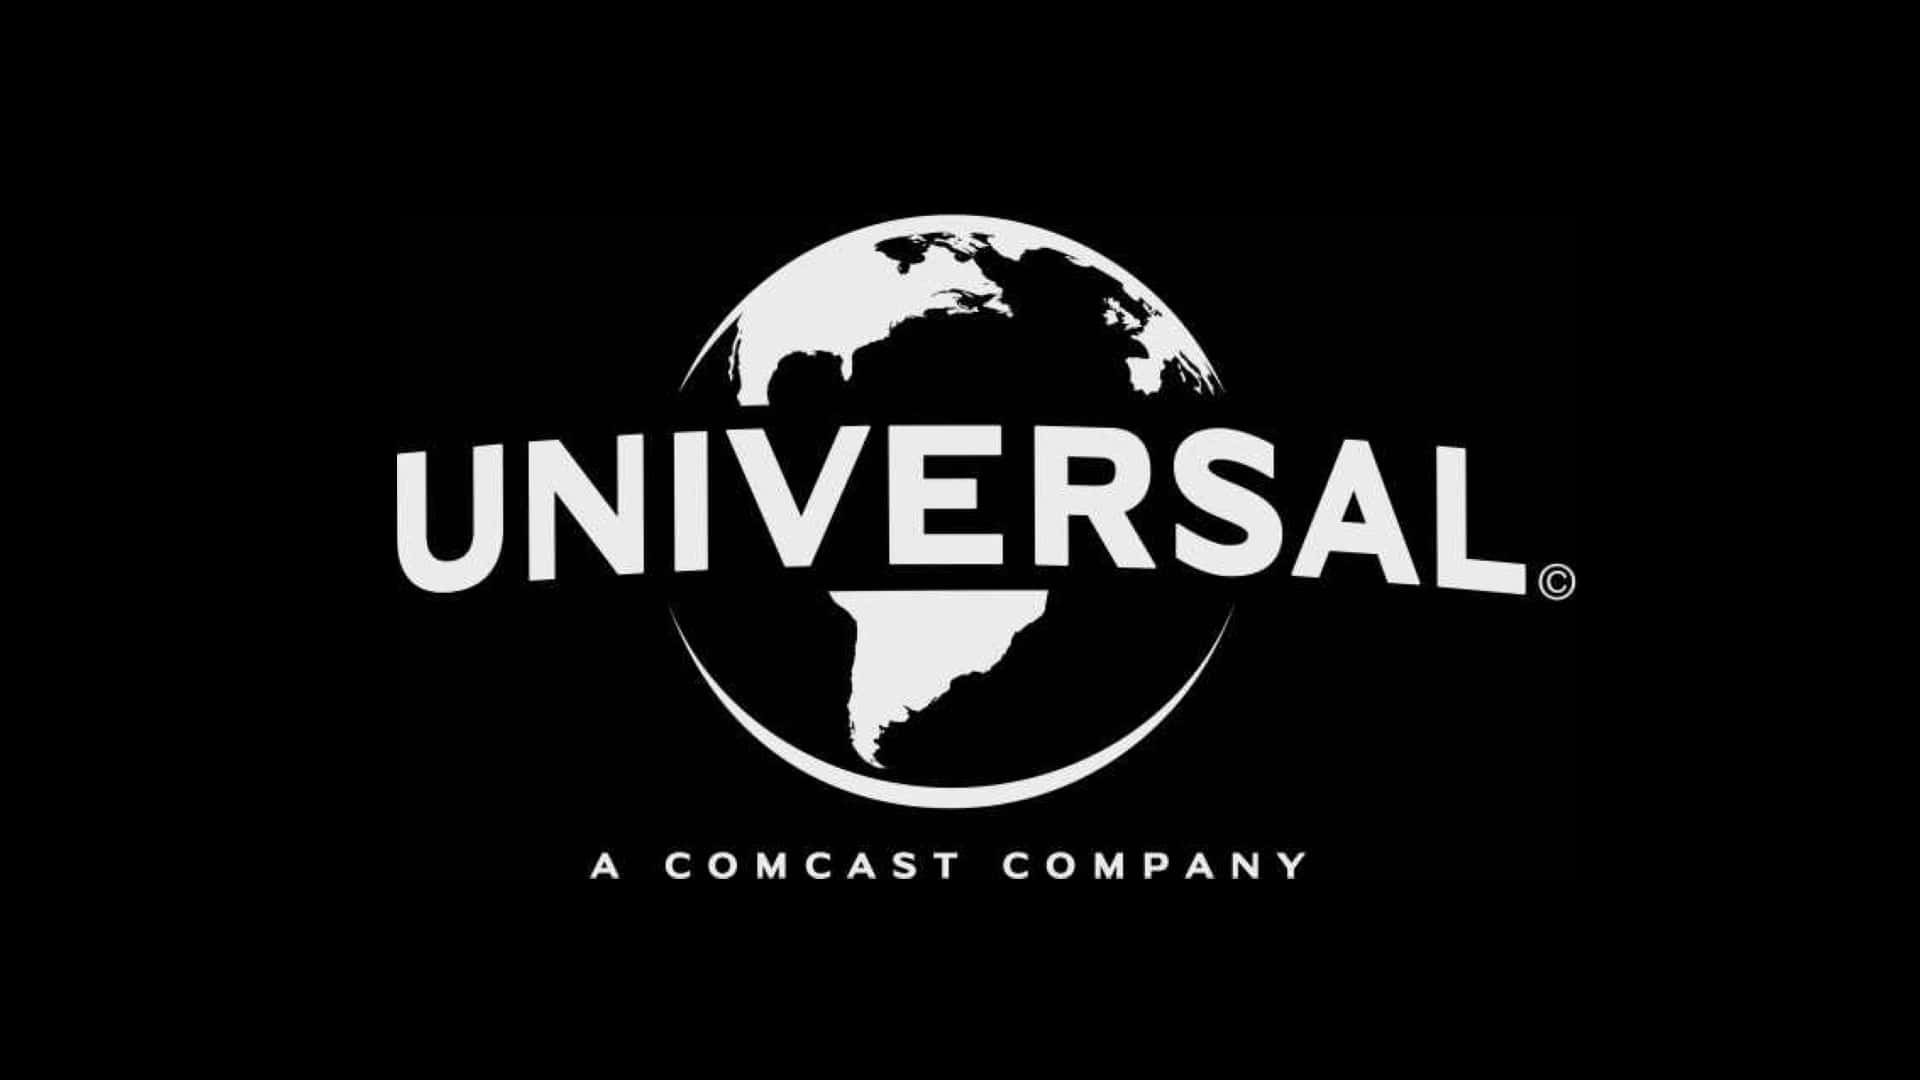 Imagendel Logotipo De Universal Pictures En Blanco Y Negro.